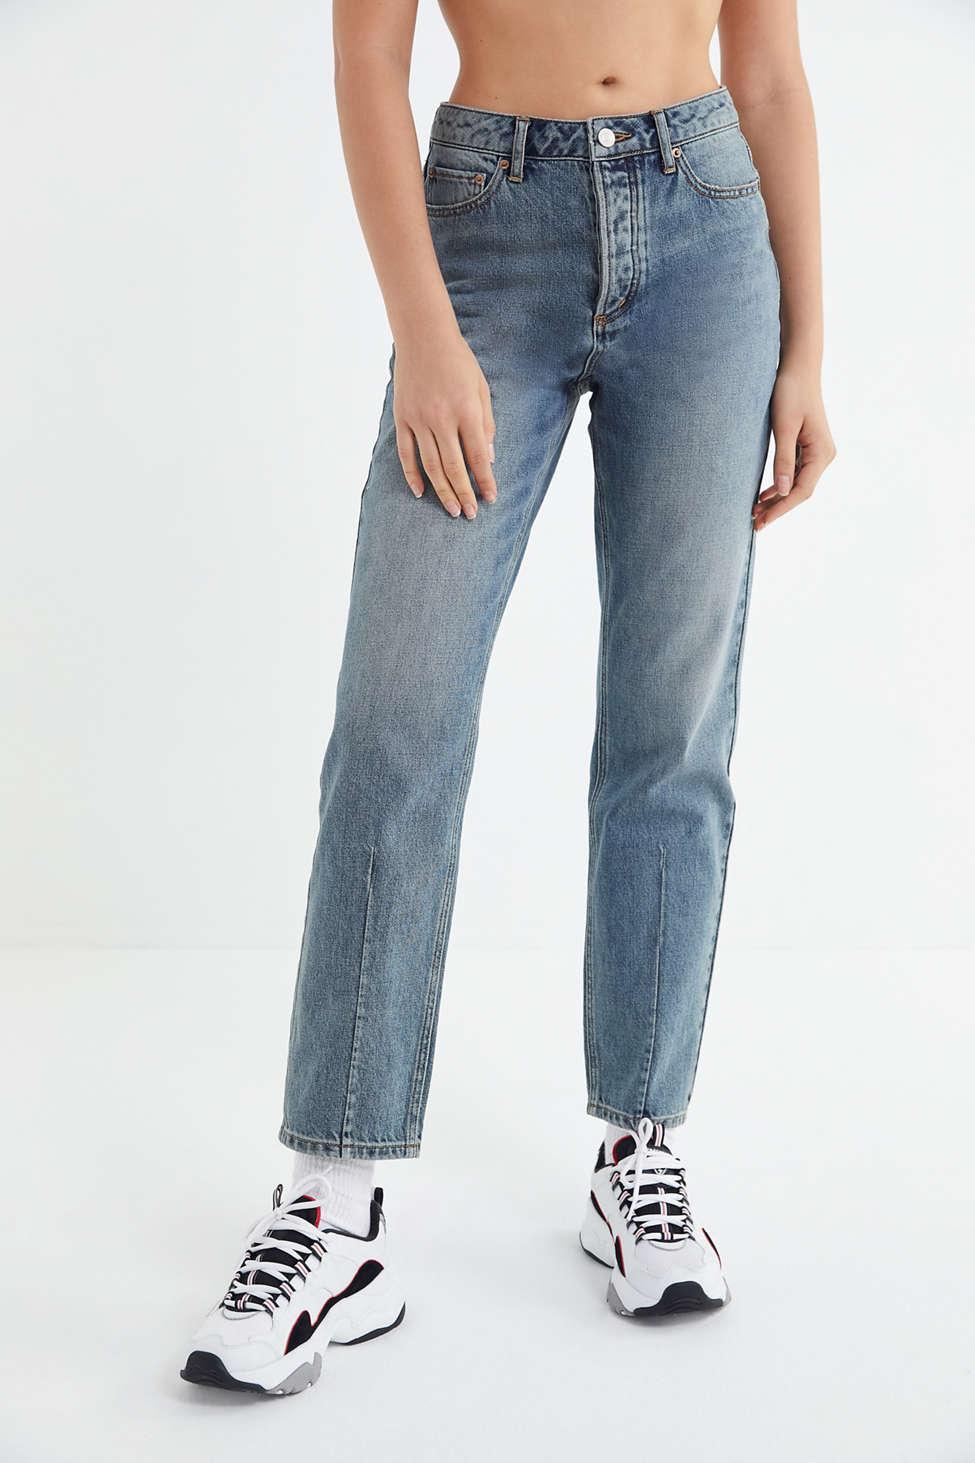 bdg straight leg jeans